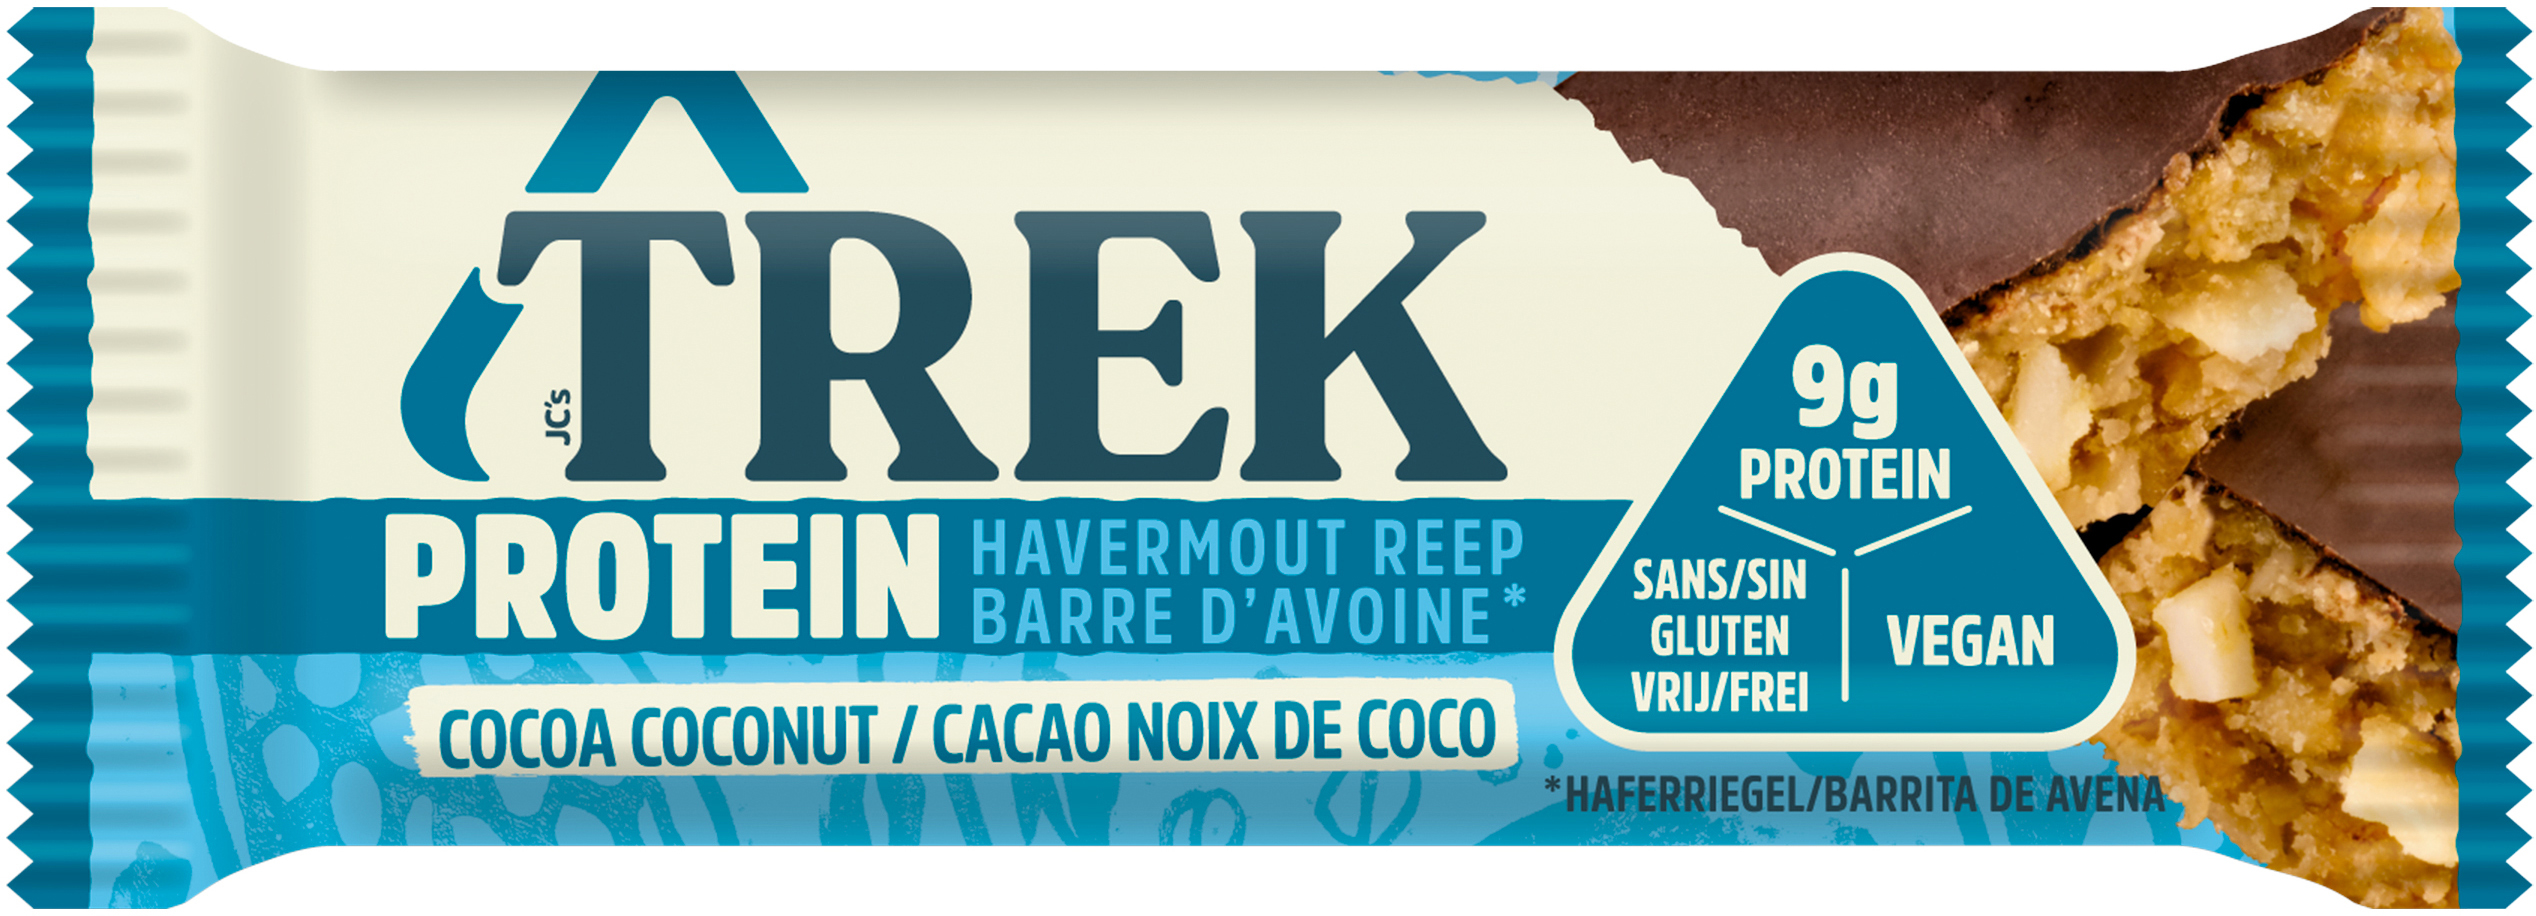 TREK Barres d'avoine protéinées 85525 16 pcs. Cocoa Coconut